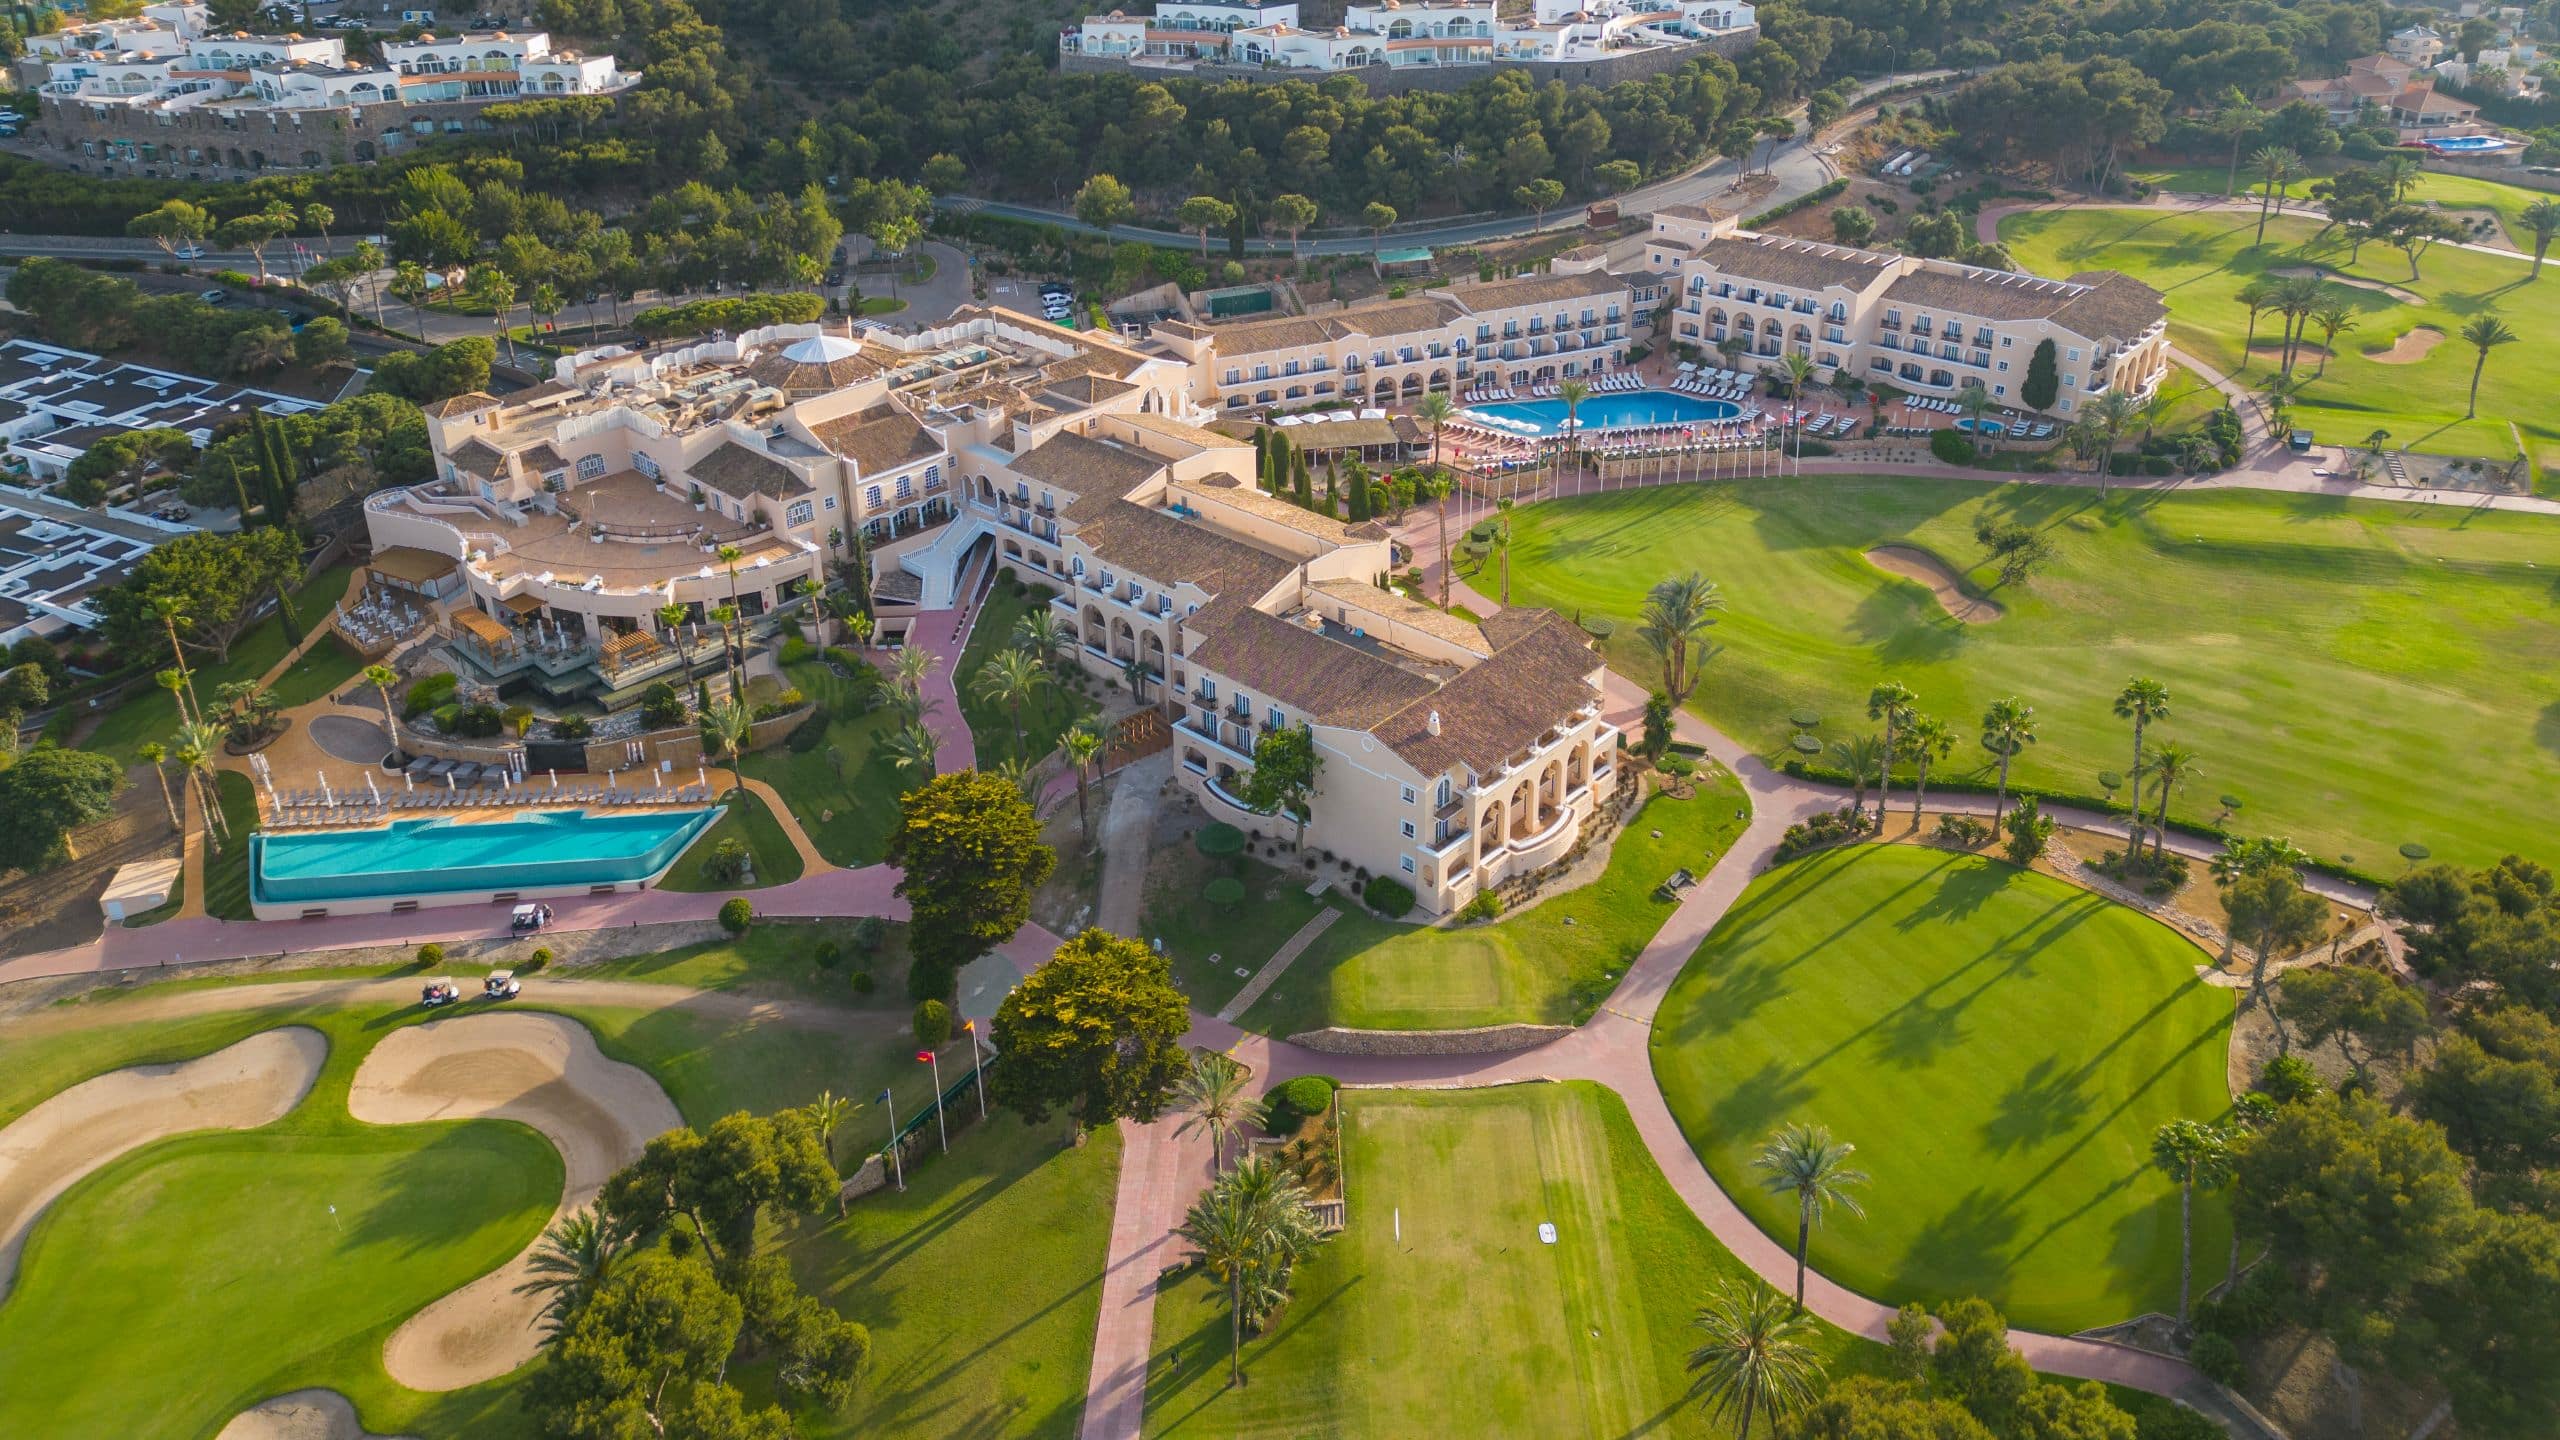 Grand Hyatt La Manga Club Golf & Spa Aerial View